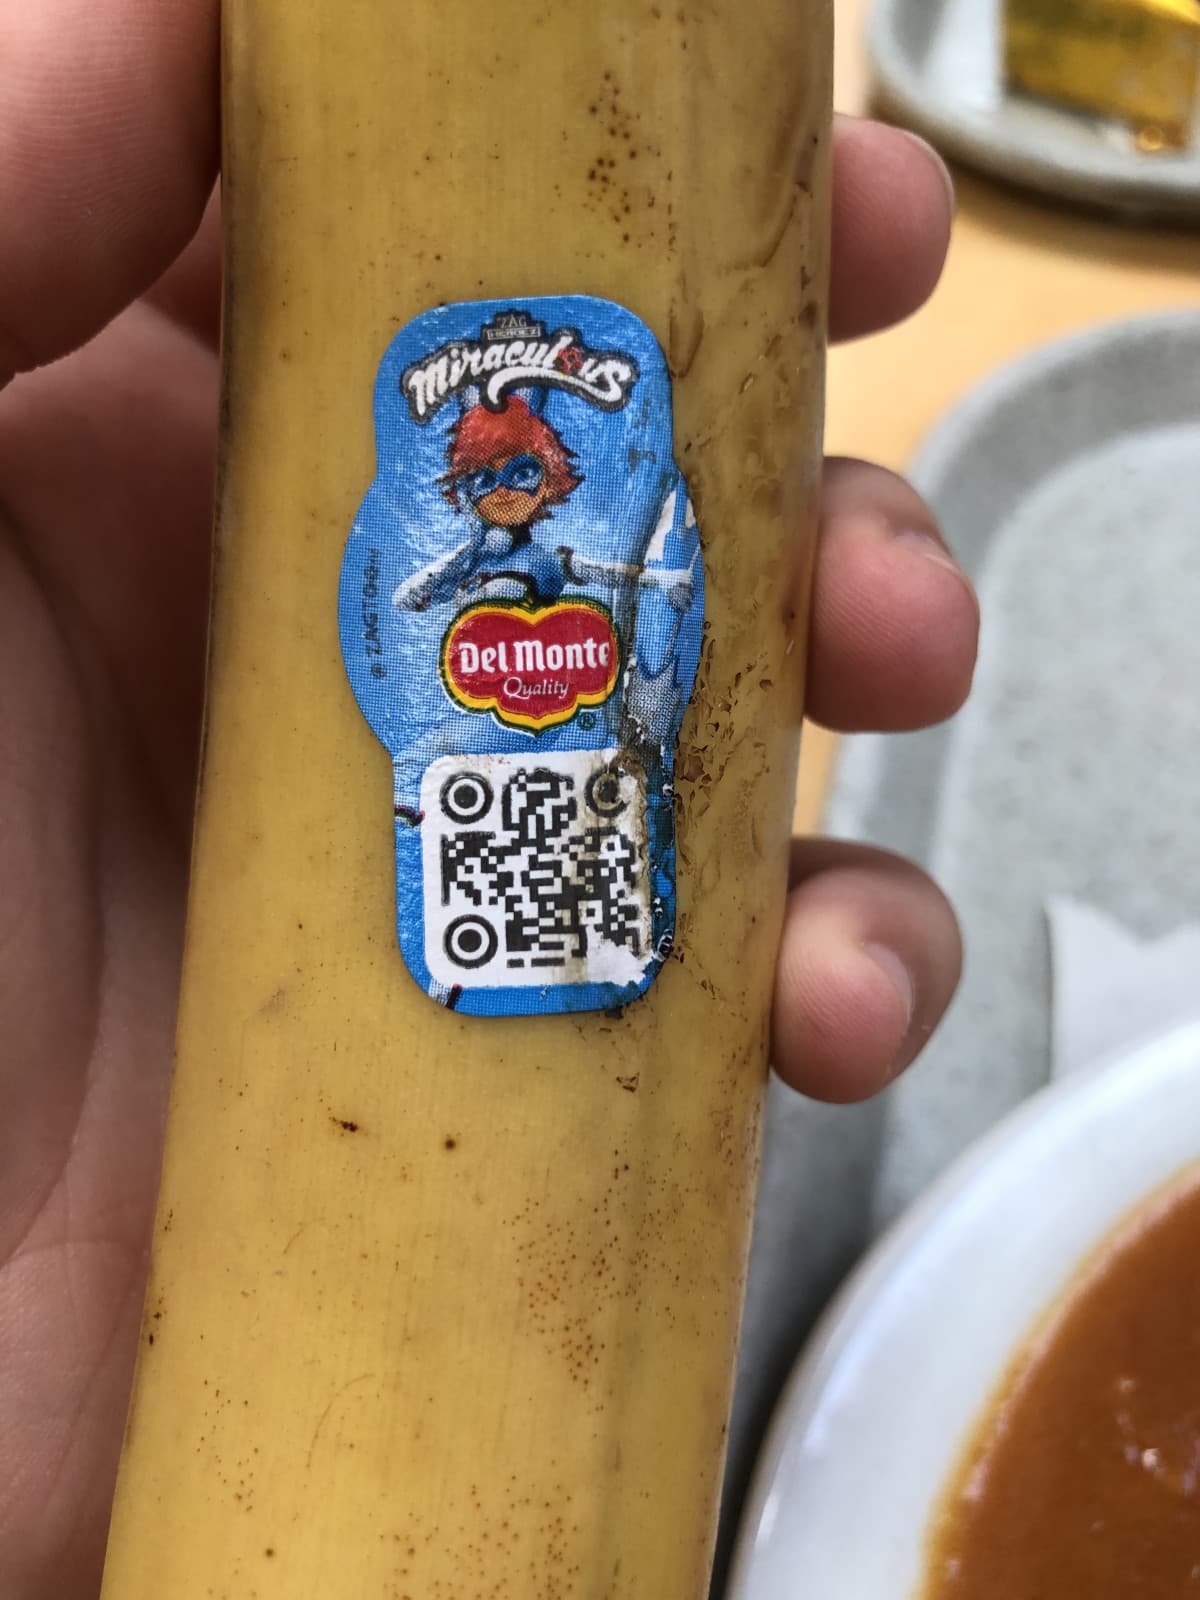 Comunque sono in Francia e ci sono le banane di miraculous. Volevo chiedere l’insta a una ma mi annoiavo quindi l’ho stalkerata direttamente ma ora non saprei se seguirla e basta o cercare di iniziare una conversazione🤞